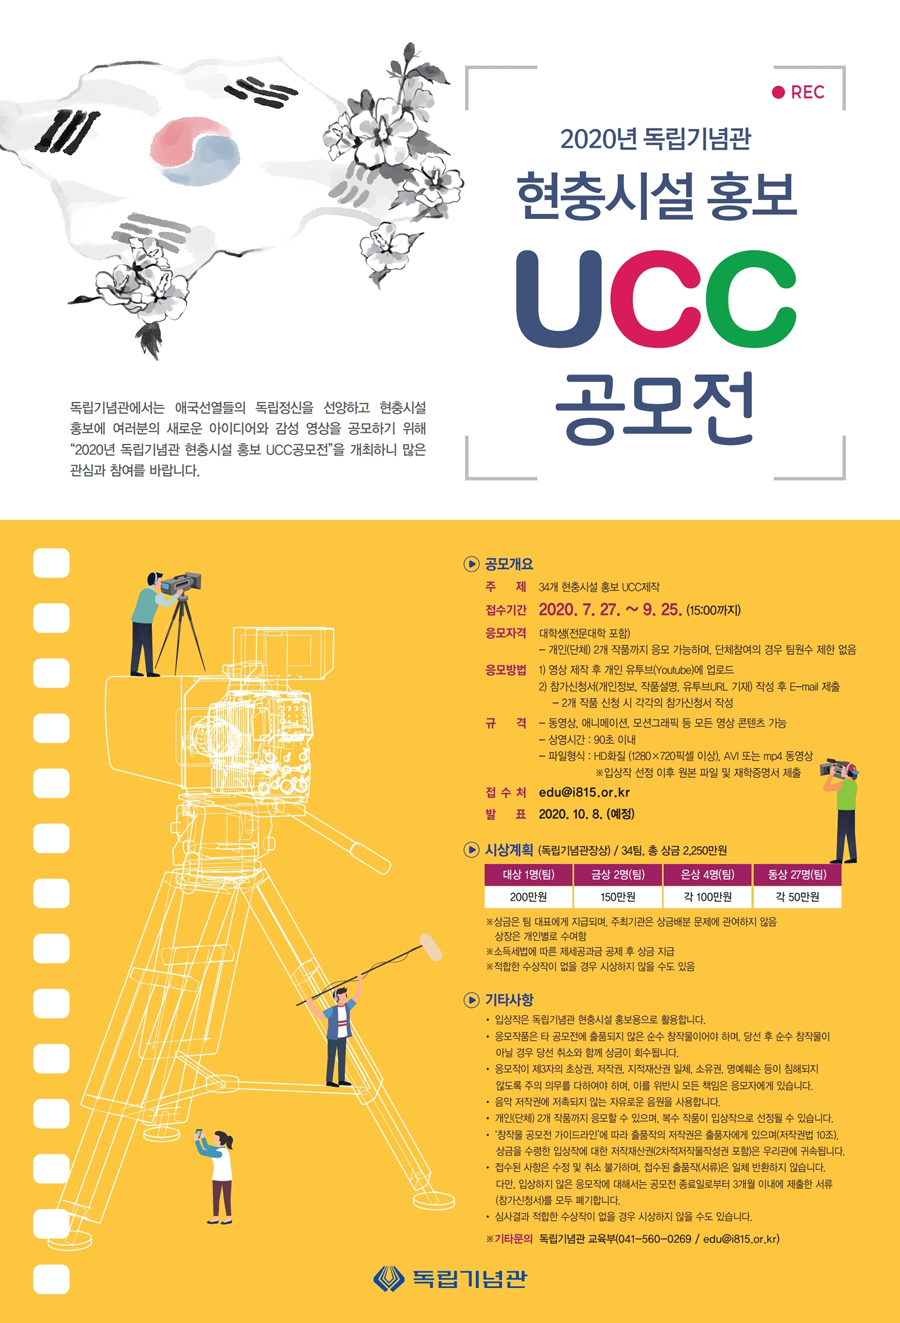 2020년 독립기념관 현충시설 홍보 UCC공모전 개최